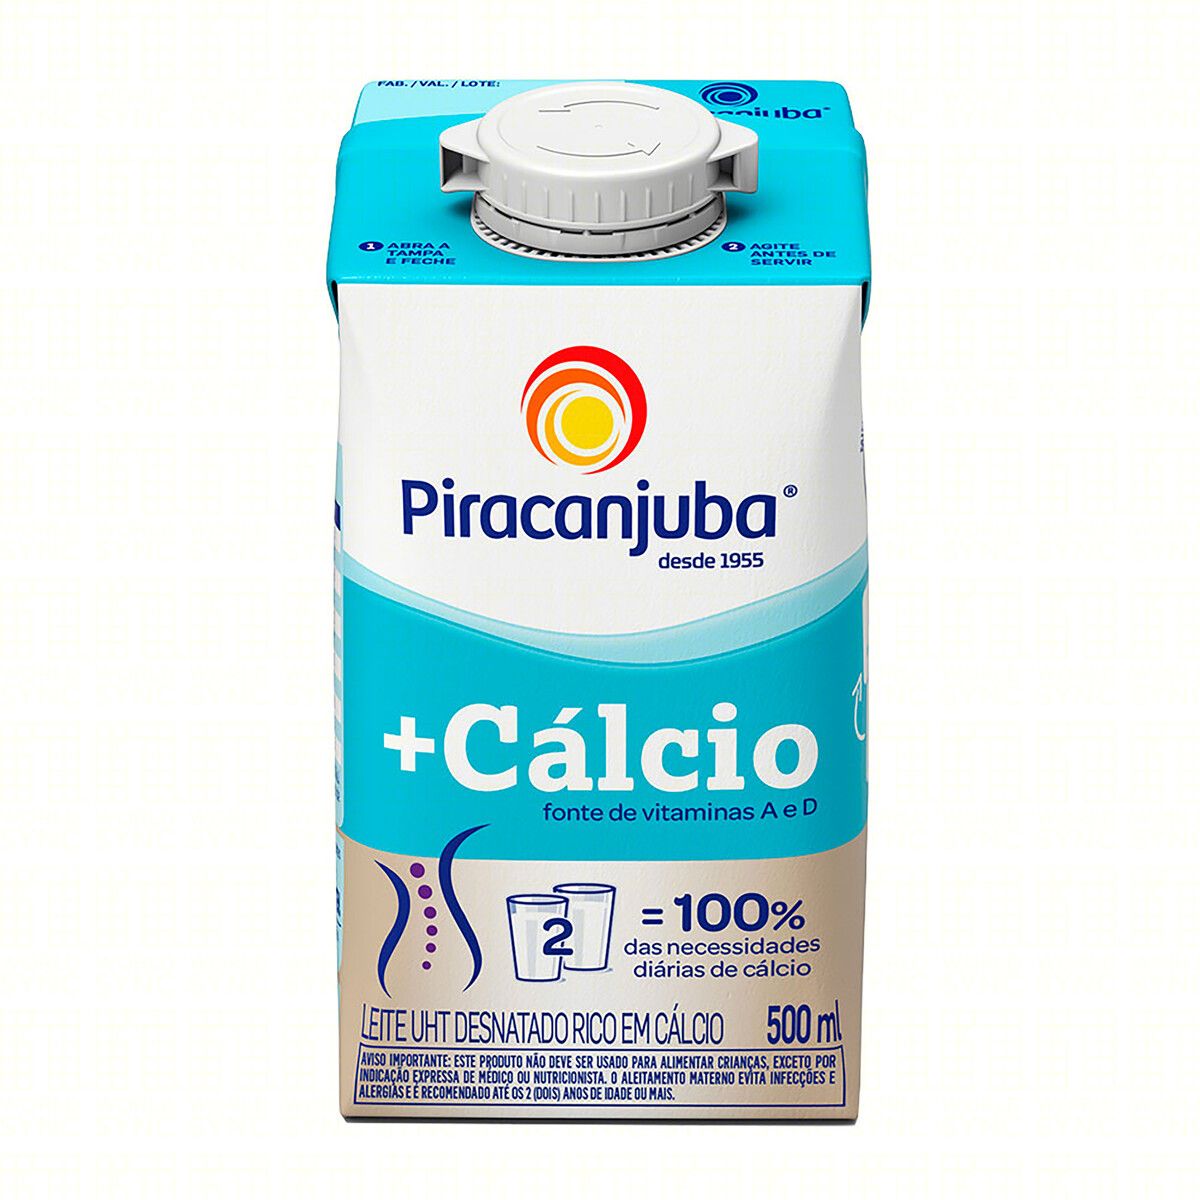 Leite UHT Desnatado Piracanjuba +Cálcio Caixa com Tampa 500ml